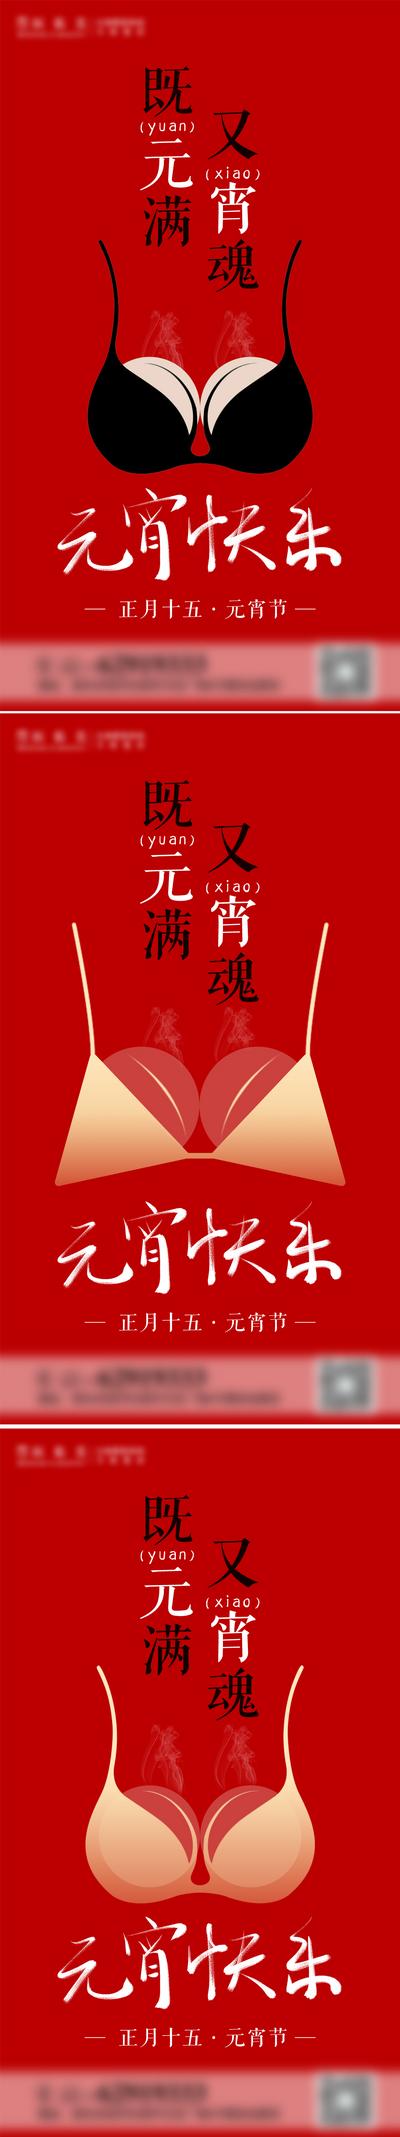 南门网 海报 医美 中国传统节日 元宵节 丰胸 汤圆 创意